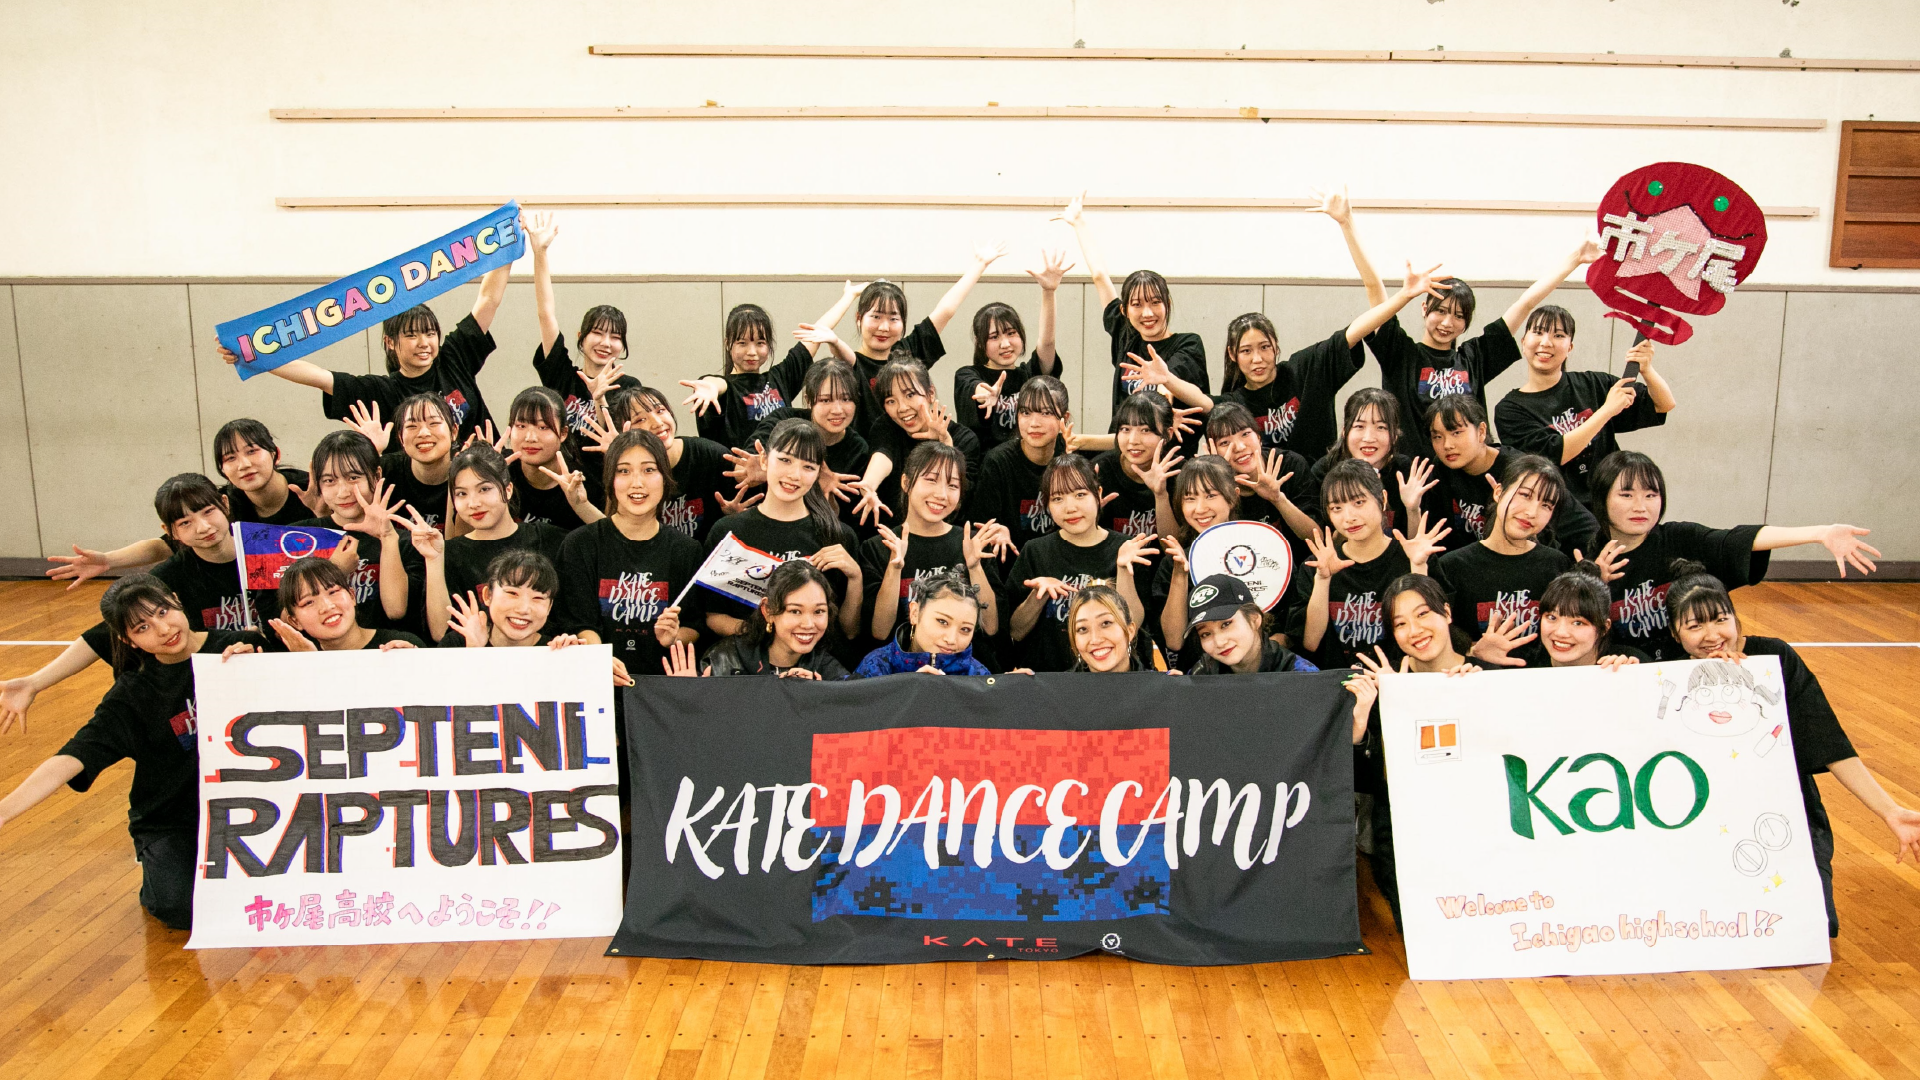 メイクとダンスを通して「自分らしさ」 を知り・育む場として「KATE DANCE CAMP」をグローバルメイクアップブランド『KATE』と共に開催